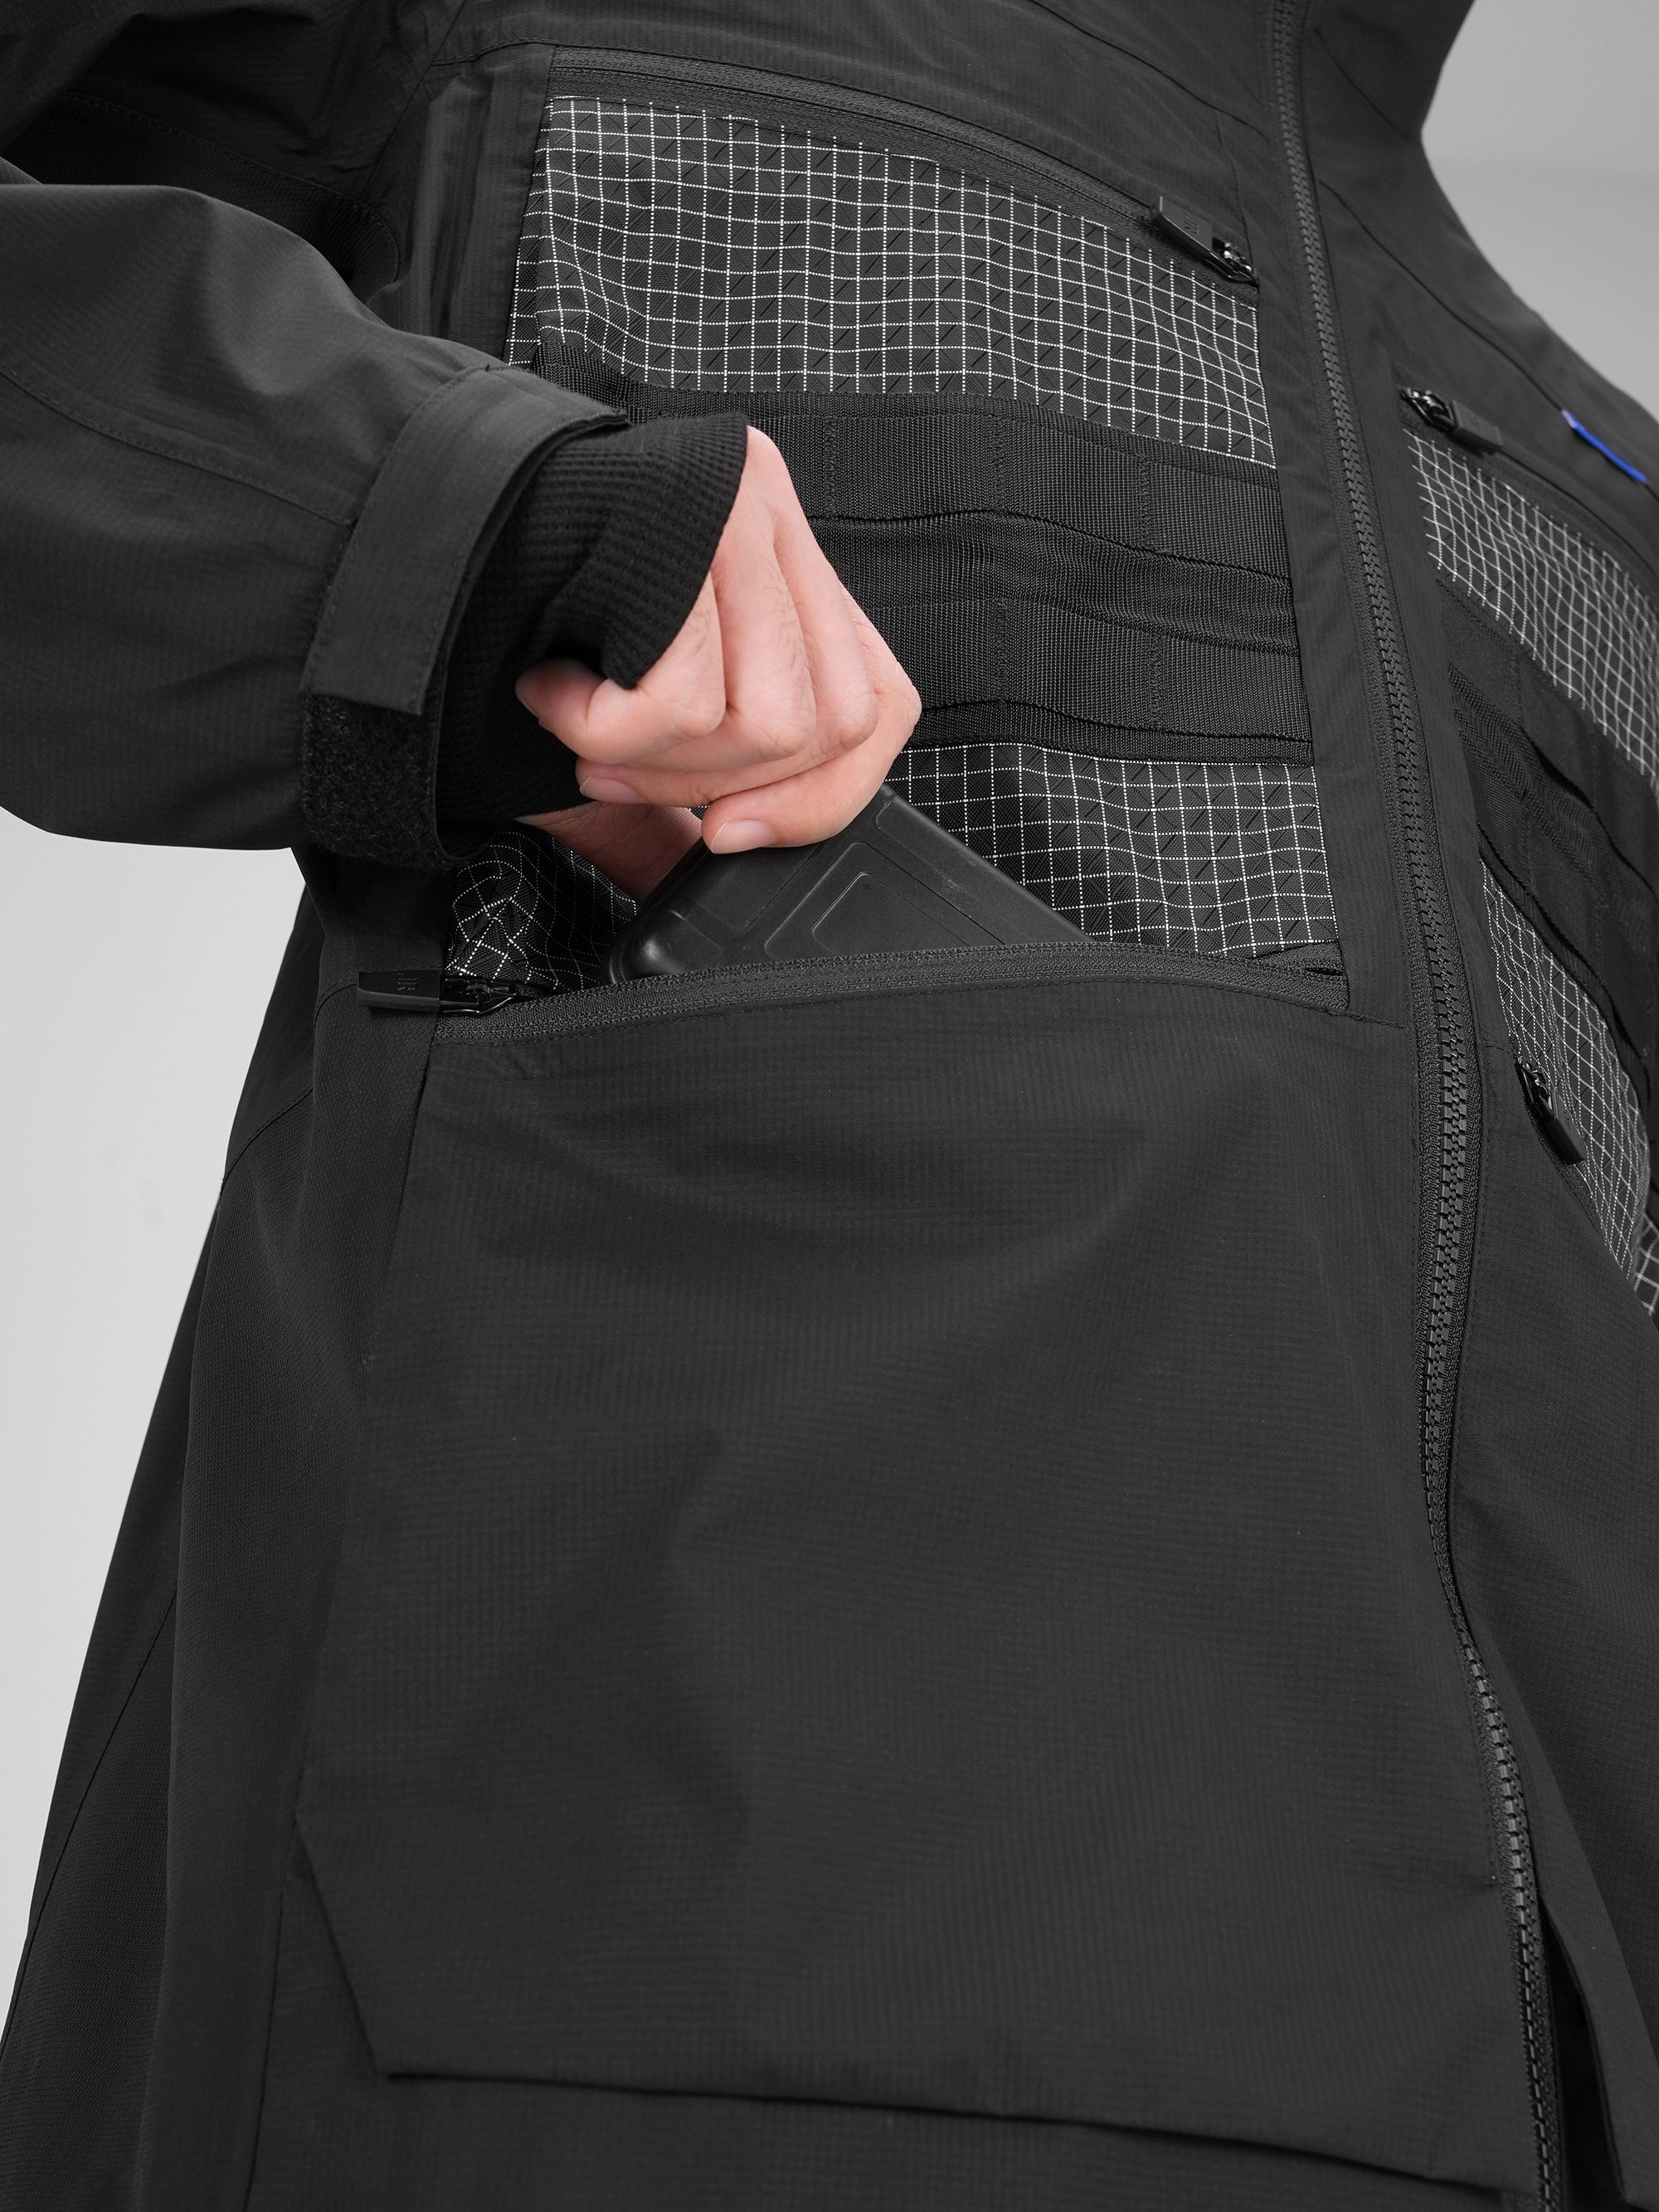 038R1 Waterproof Technical Shell Jacket